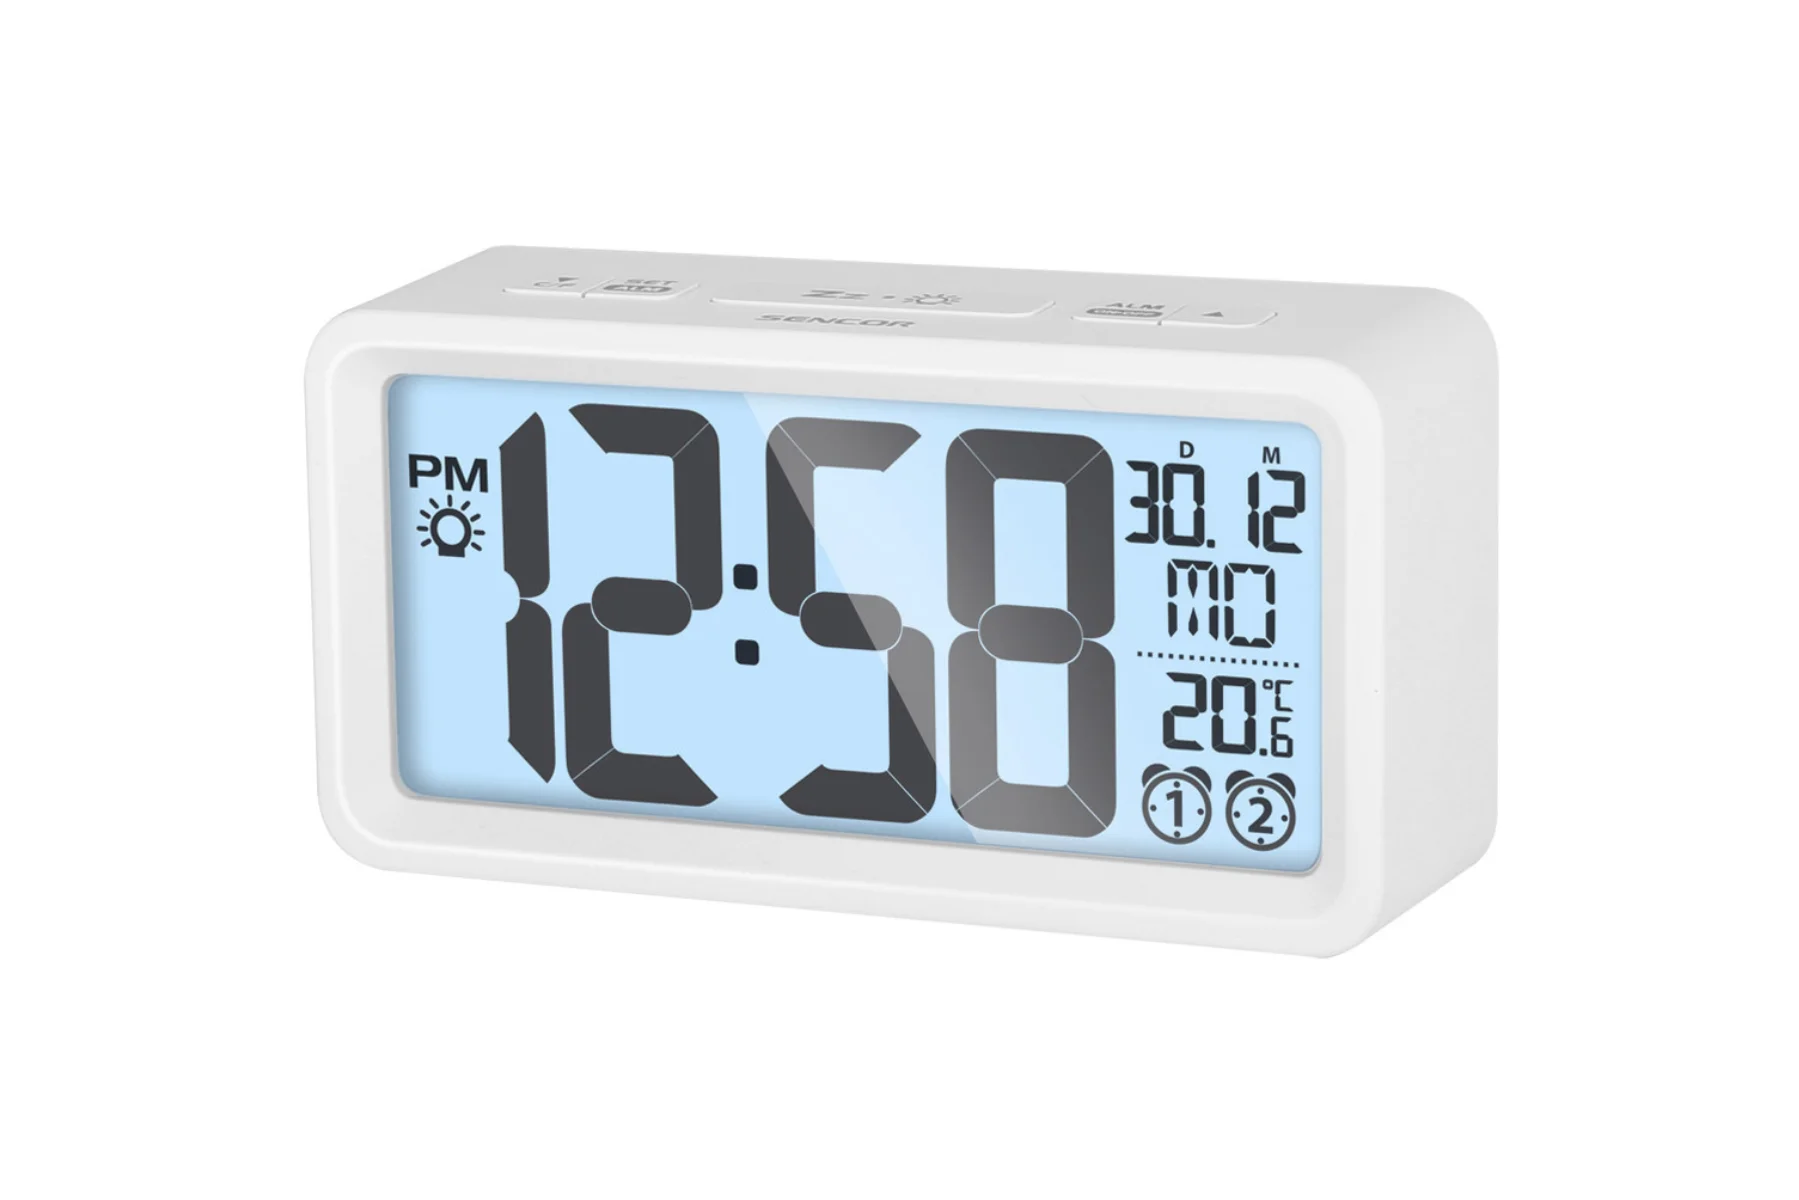 Digitálne hodiny s budíkom a teplomerom Sencor SDC 2800 W presne merania